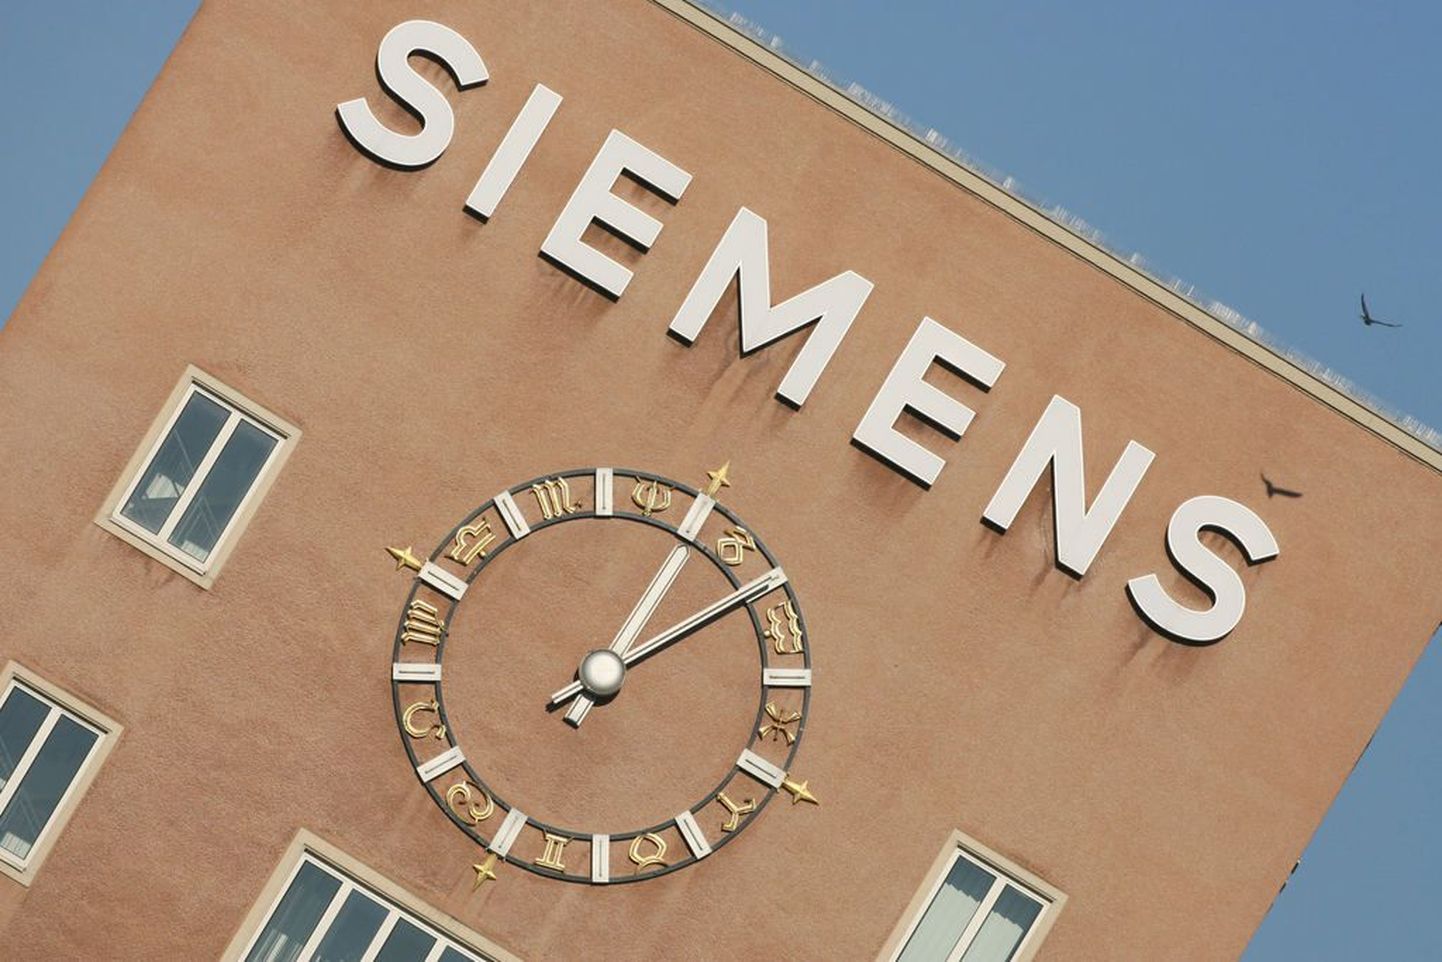 Siemens vandus Venemaale truudust.